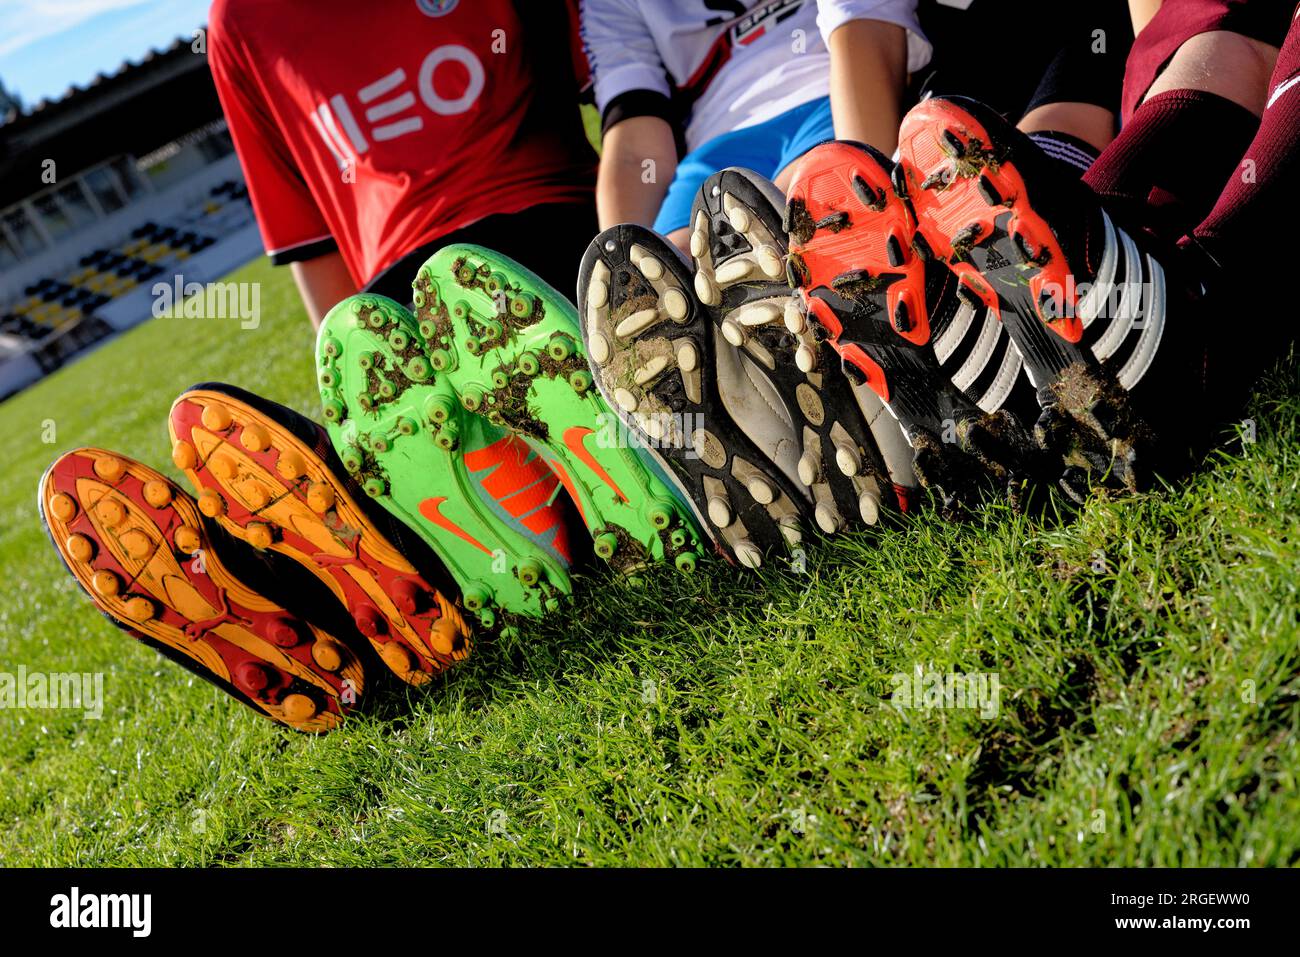 Geschlossen mit Kindern, die Fußball oder Fußballschuhe tragen, Spielsport in der Gemeinde Alcanena, Portugal. Städtisches Stadion Joaquim Maria Baptista - 29 Stockfoto